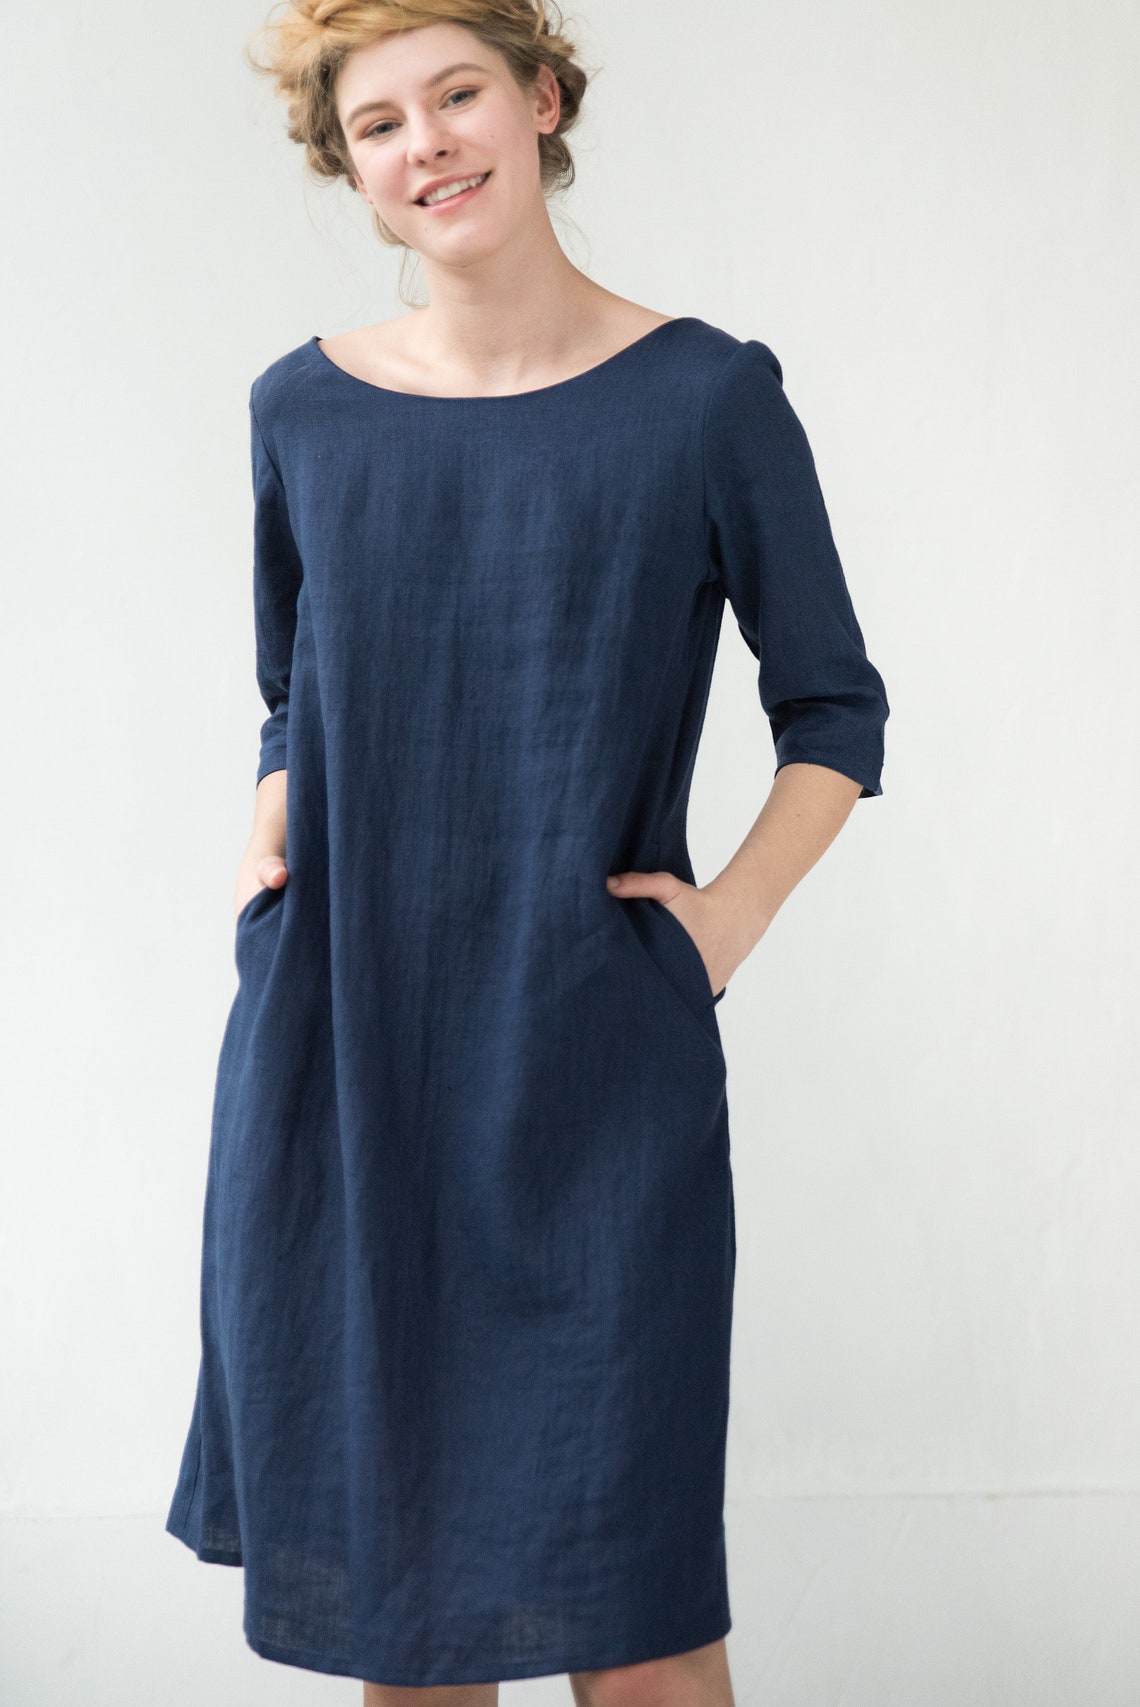 Linen Midi Dress Dark Blue Dress Shift Dress Minimalist | Etsy